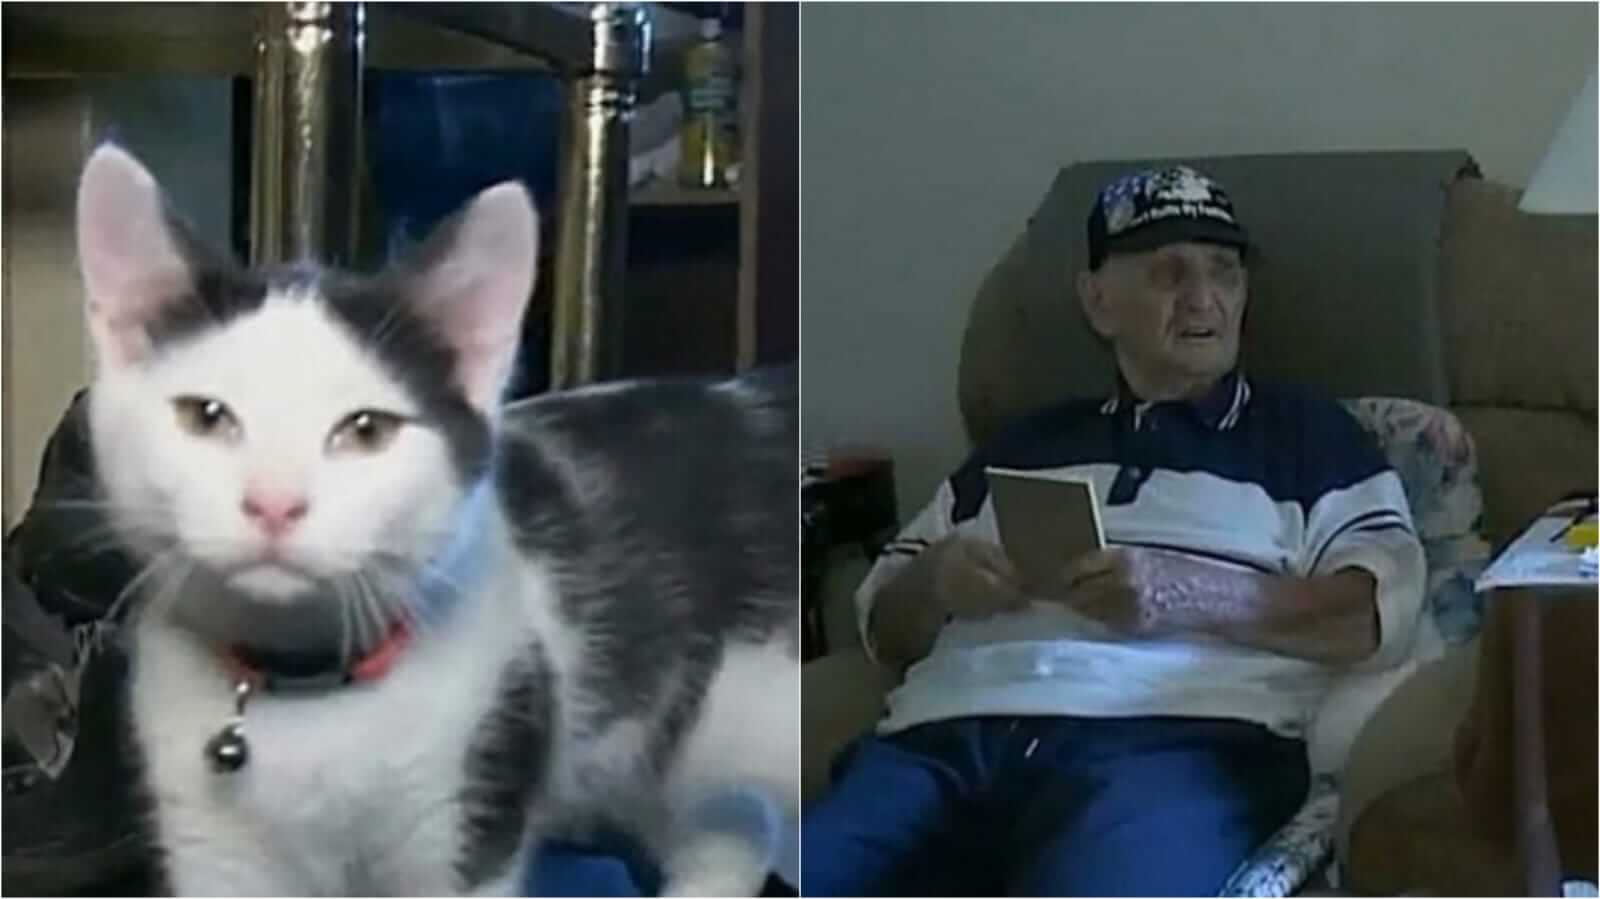 Foto de filhote de gato ao lado de foto de idoso sentado em sofá